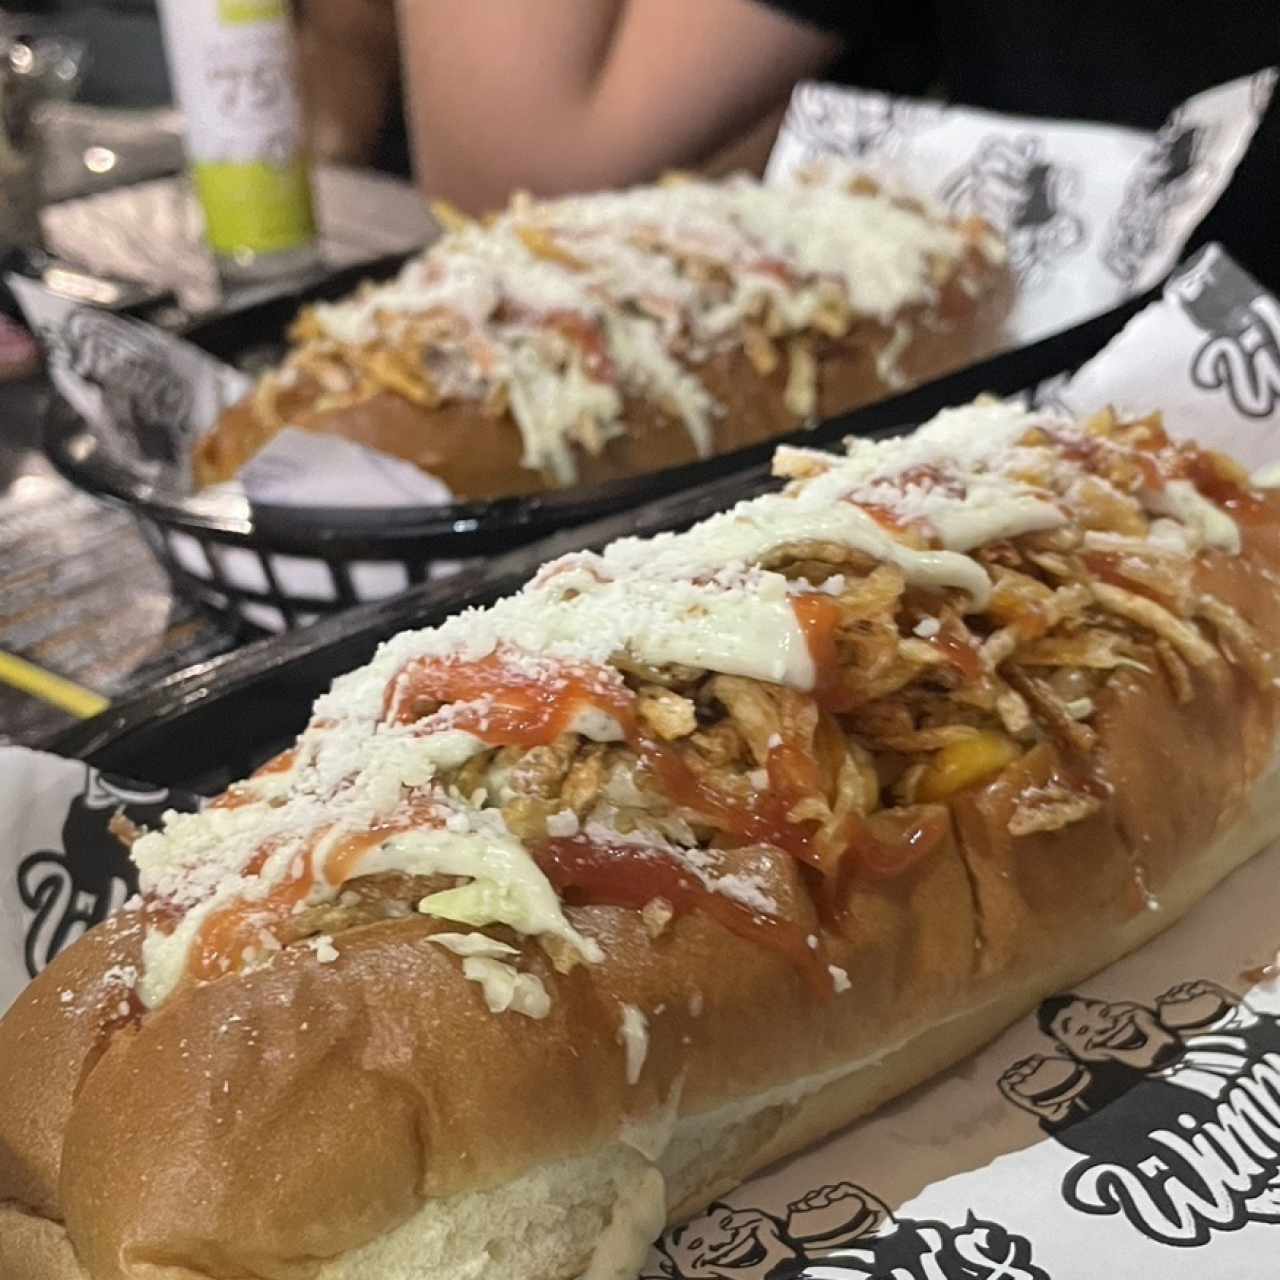 Hot Dog Clasico